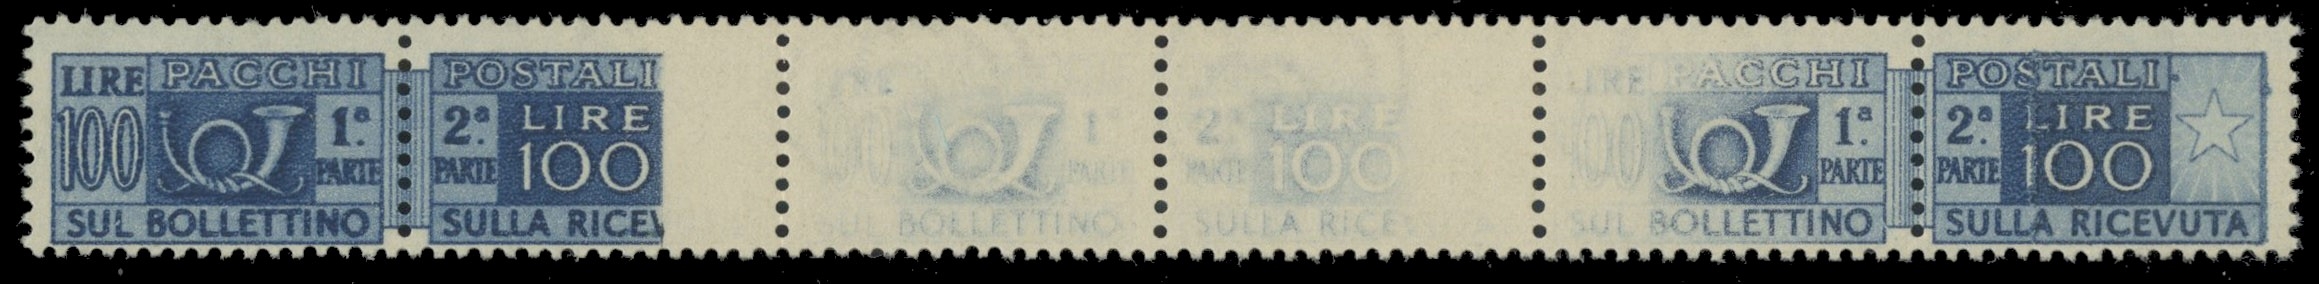 ITALIA 1946 - 77c+77ca: Pacchi Postali,100L azzurro striscia di tre, con stampa incompleta ed evanescente